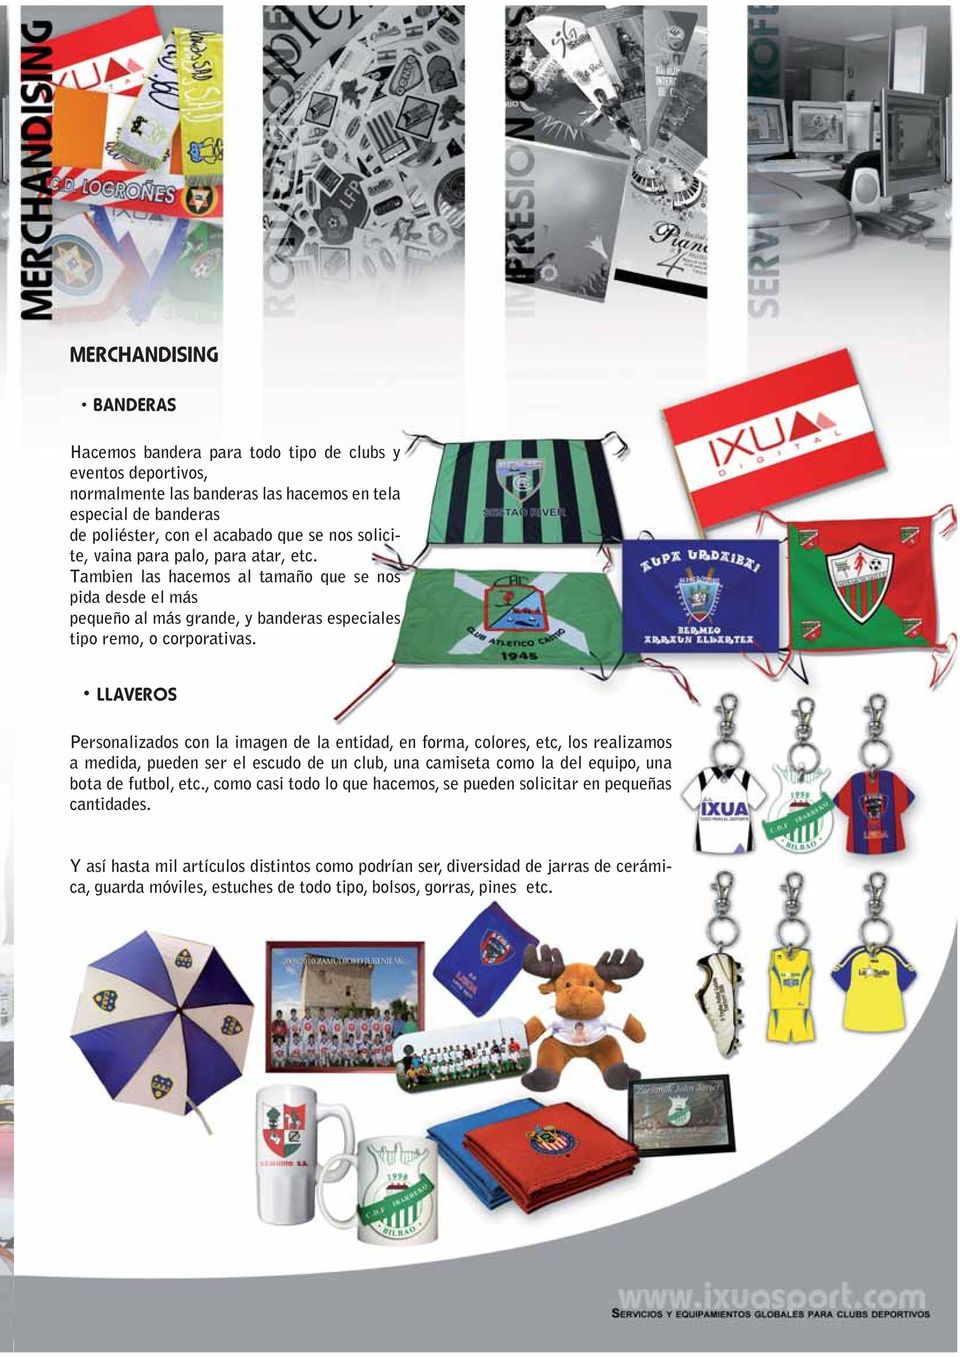 LLAVEROS Personalizados con la imagen de la entidad, en forma, colores, etc, los realizamos a medida, pueden ser el escudo de un club, una camiseta como la del equipo, una bota de futbol, etc.